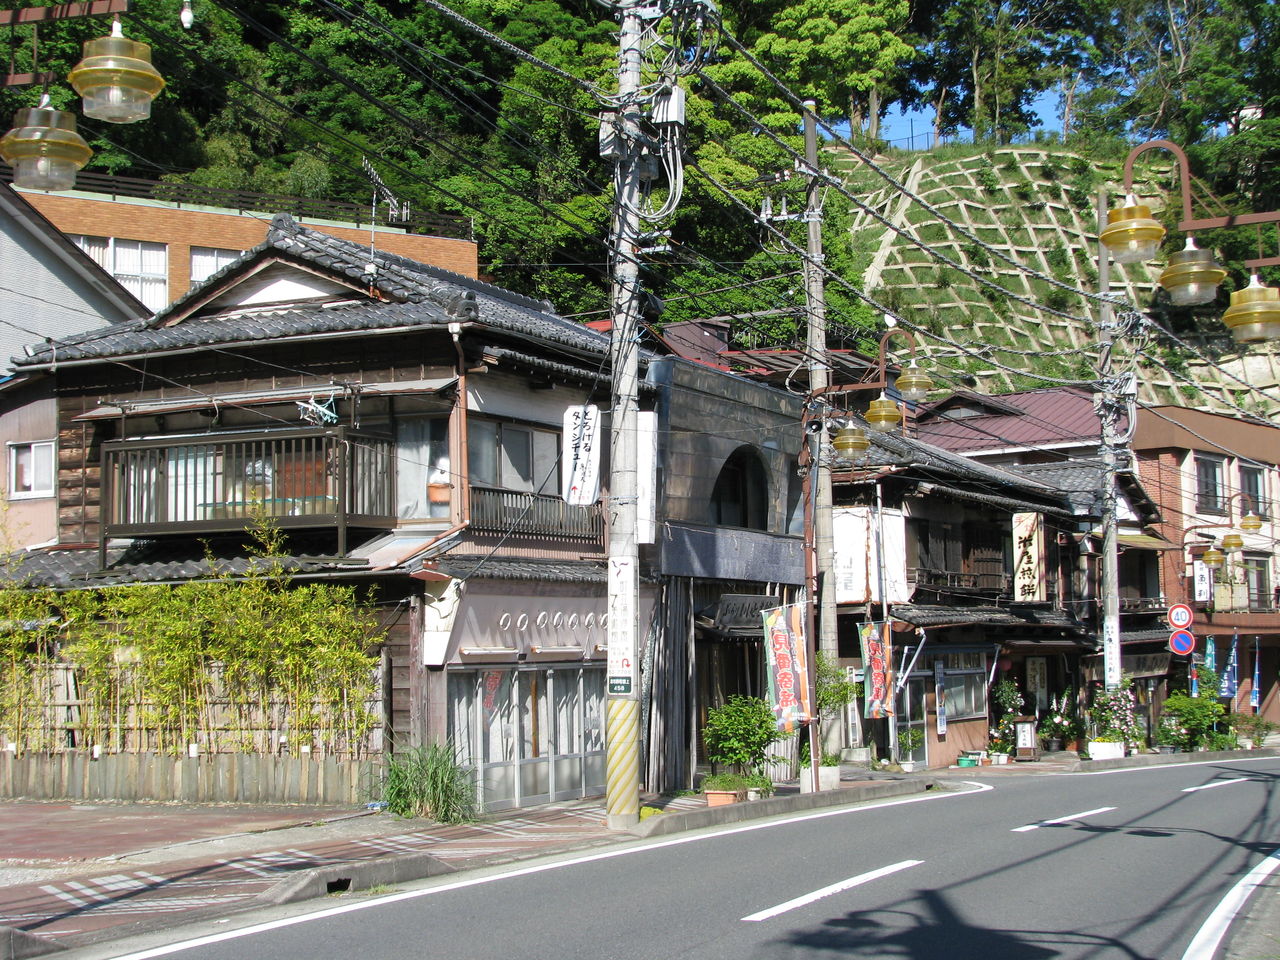 神奈川県湯河原温泉 1 廃墟化しつつある湯屋建築群 散歩と旅ときどき温泉